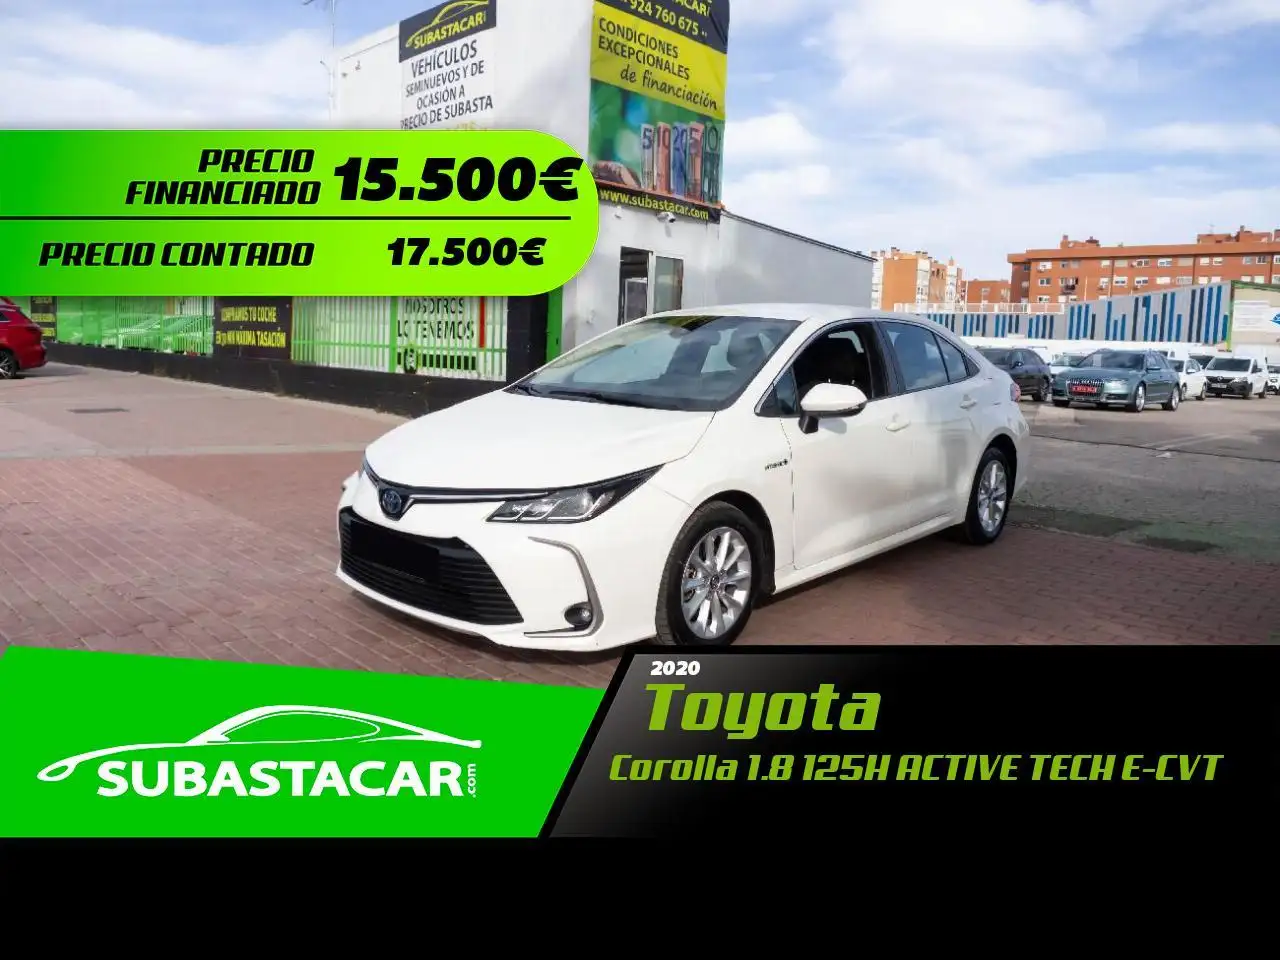 Toyota Corolla Stadswagen in Wit tweedehands in Torrejón de Ardoz voor € 15.500,-